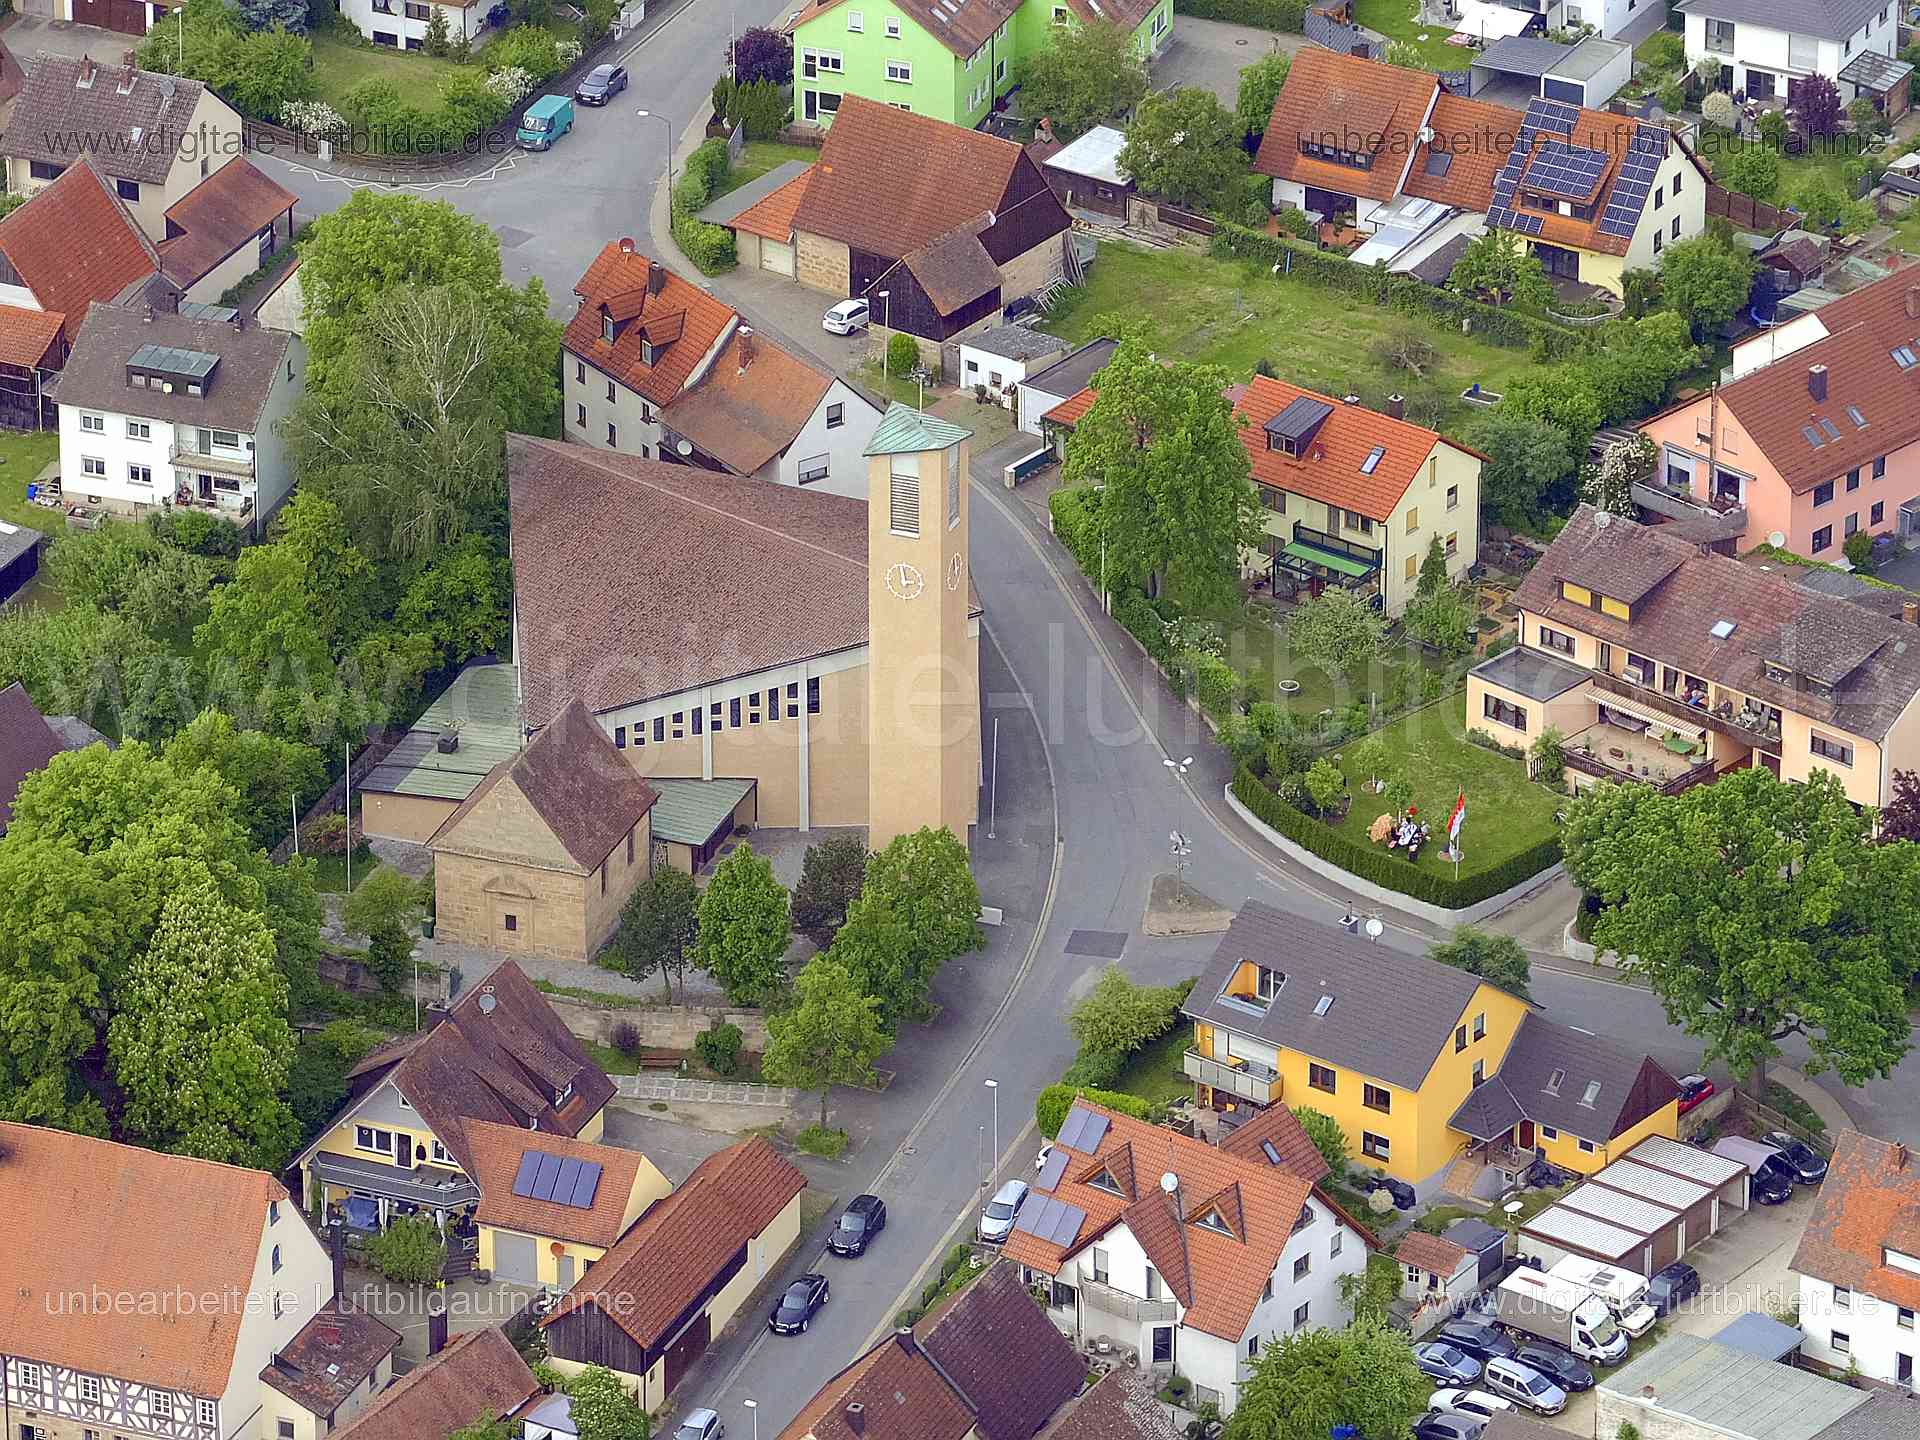 Luftbild - Unsere Liebe Frau Kirche, Ort: Erlangen, Tags: Unsere Liebe Frau, Kirche, Dechsendorf, , Bischofsweiherstraße, ...